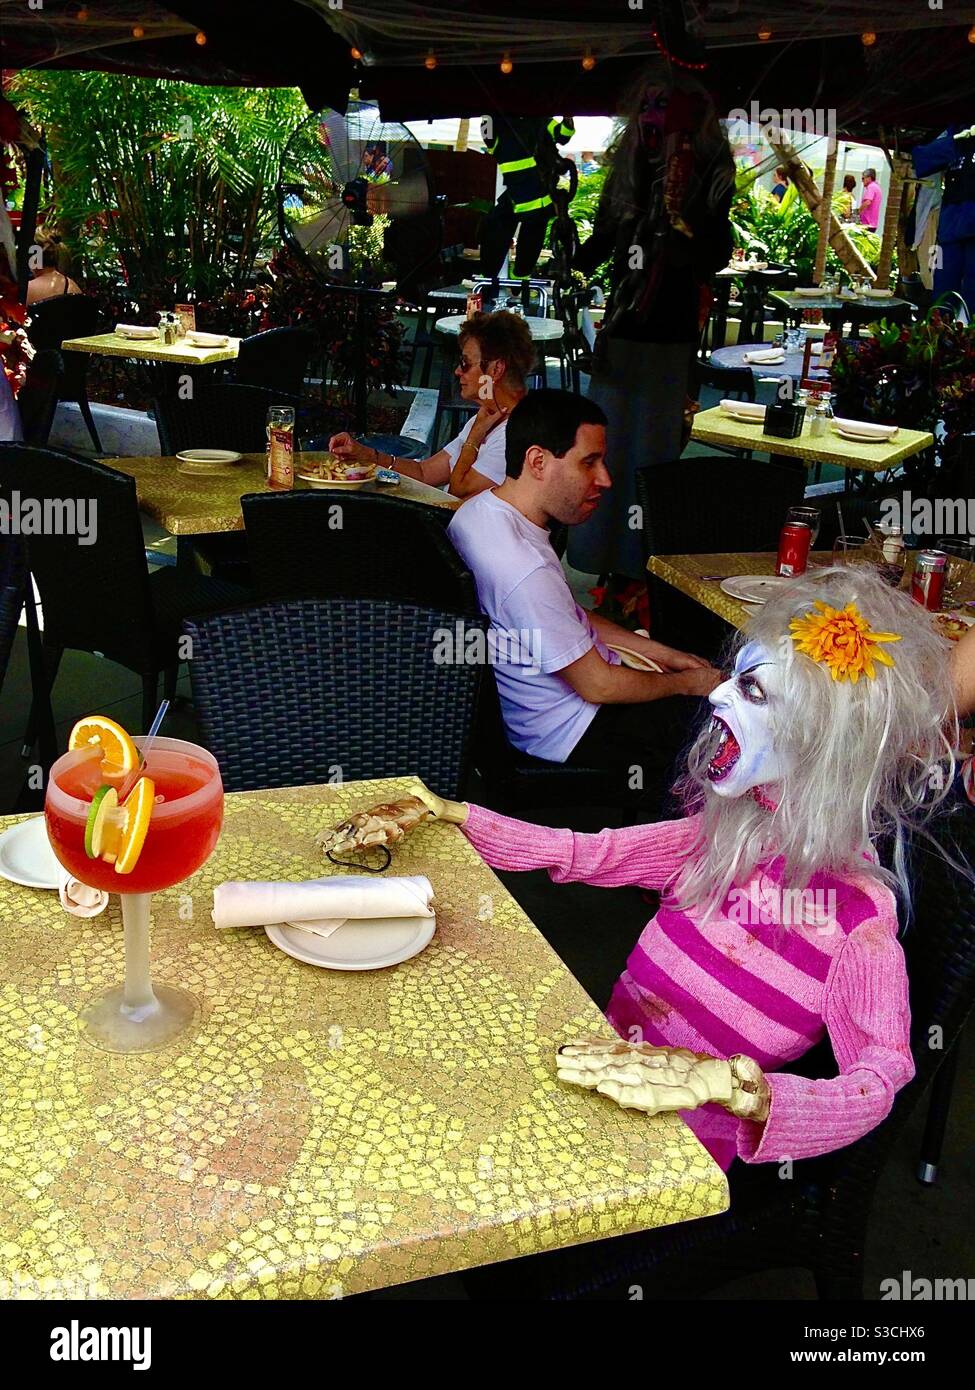 Voglio il servizio e lo voglio subito! Il manichino spaventoso sembra dirlo mentre gode di un cocktail tropicale colorato in un ristorante affollato a South Beach Miami, Florida, USA Foto Stock